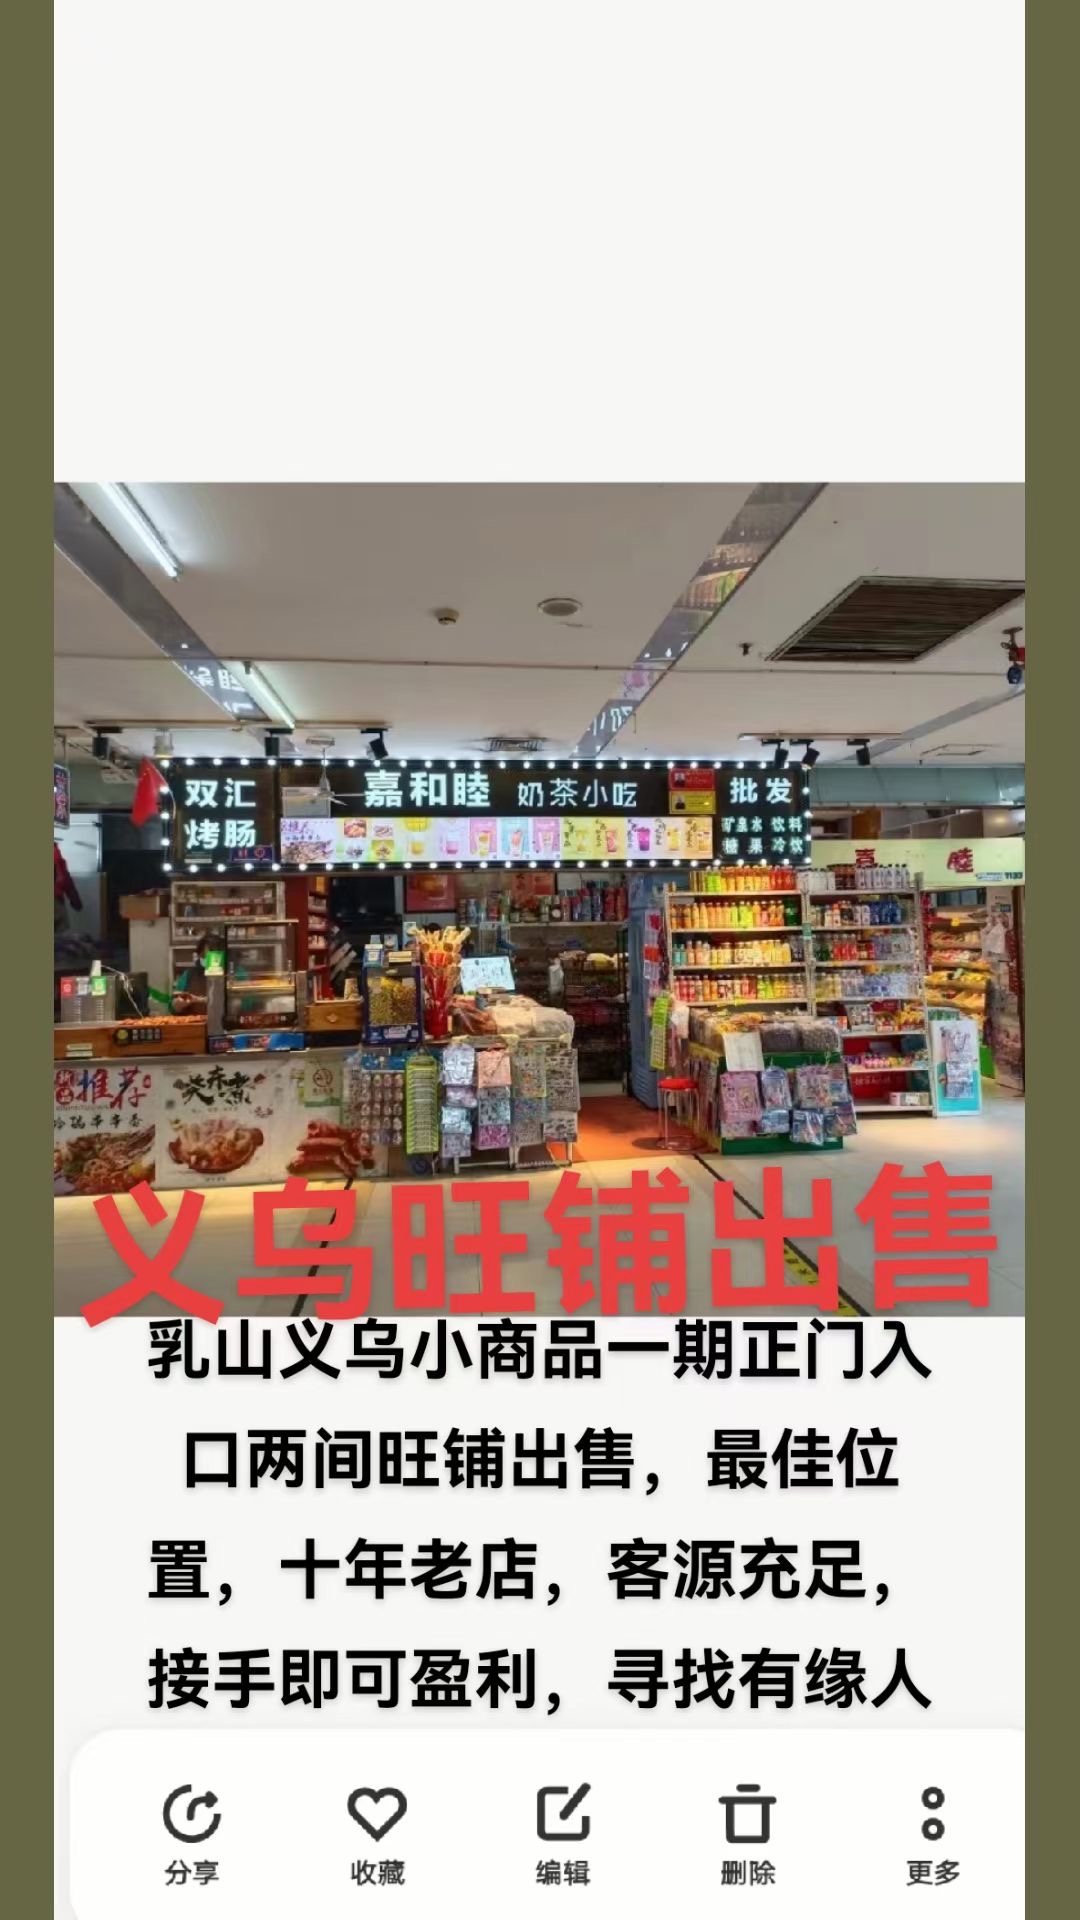 义乌烤肠店铺出售